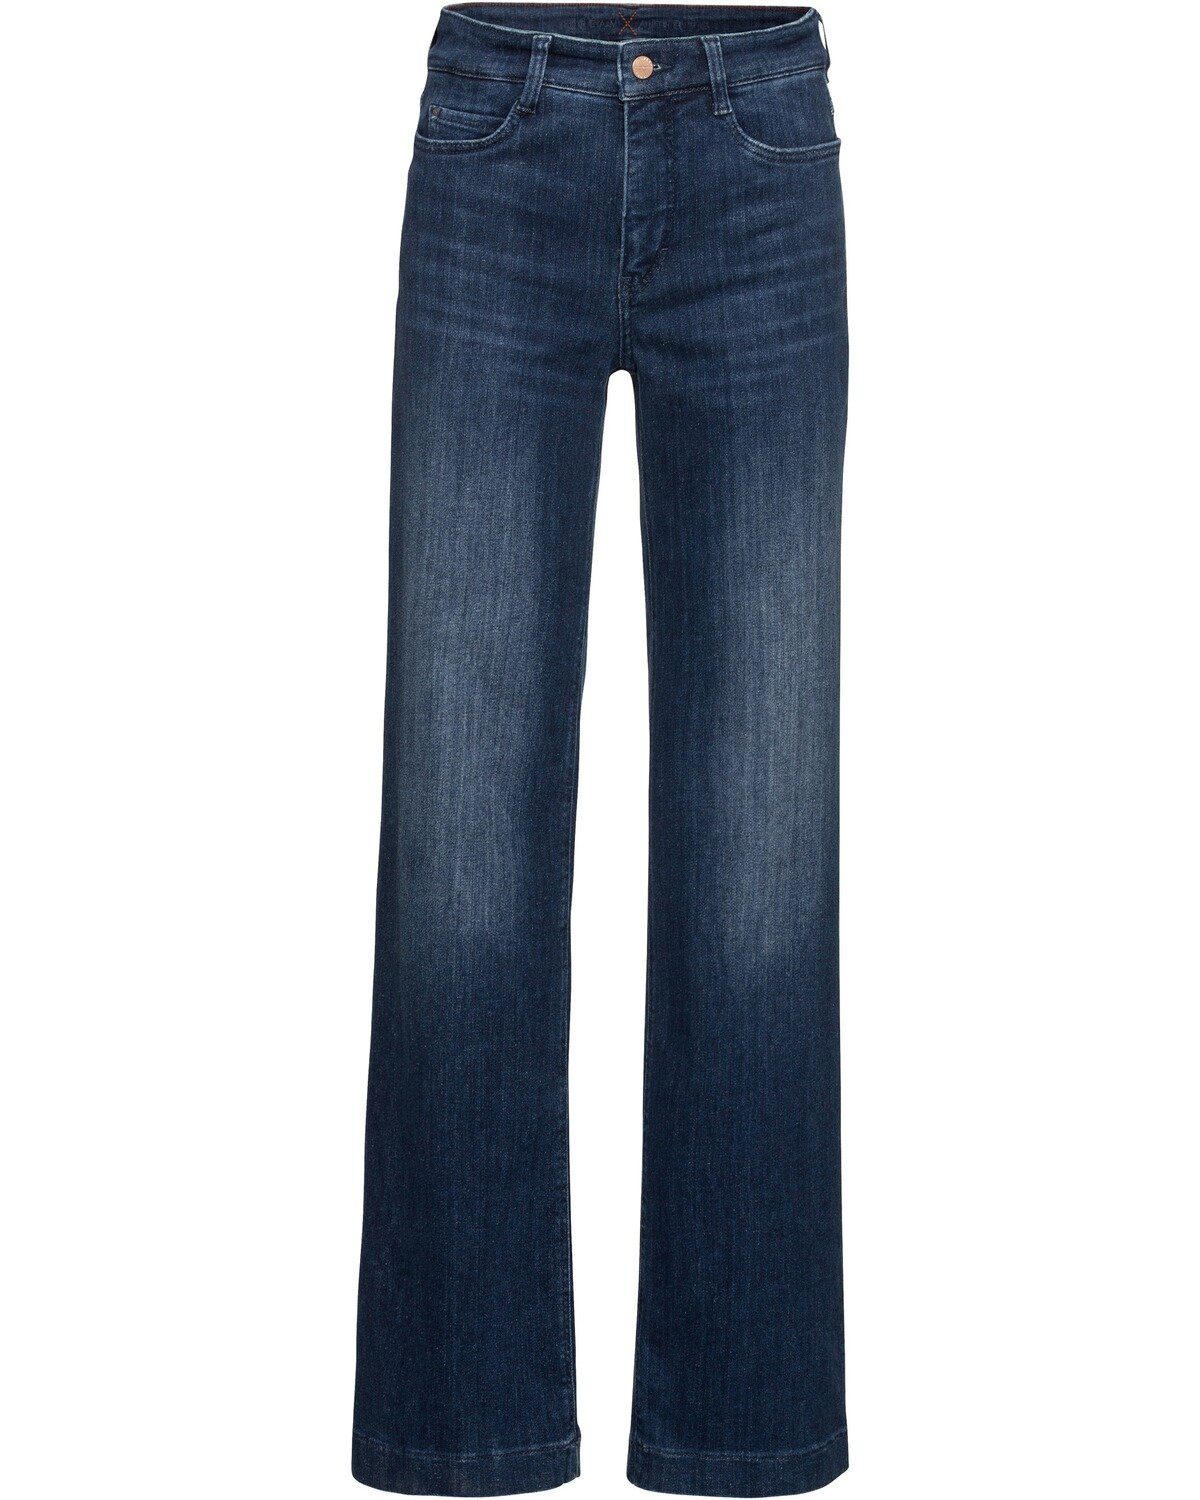 Frankonia Jeans für Damen online kaufen | OTTO